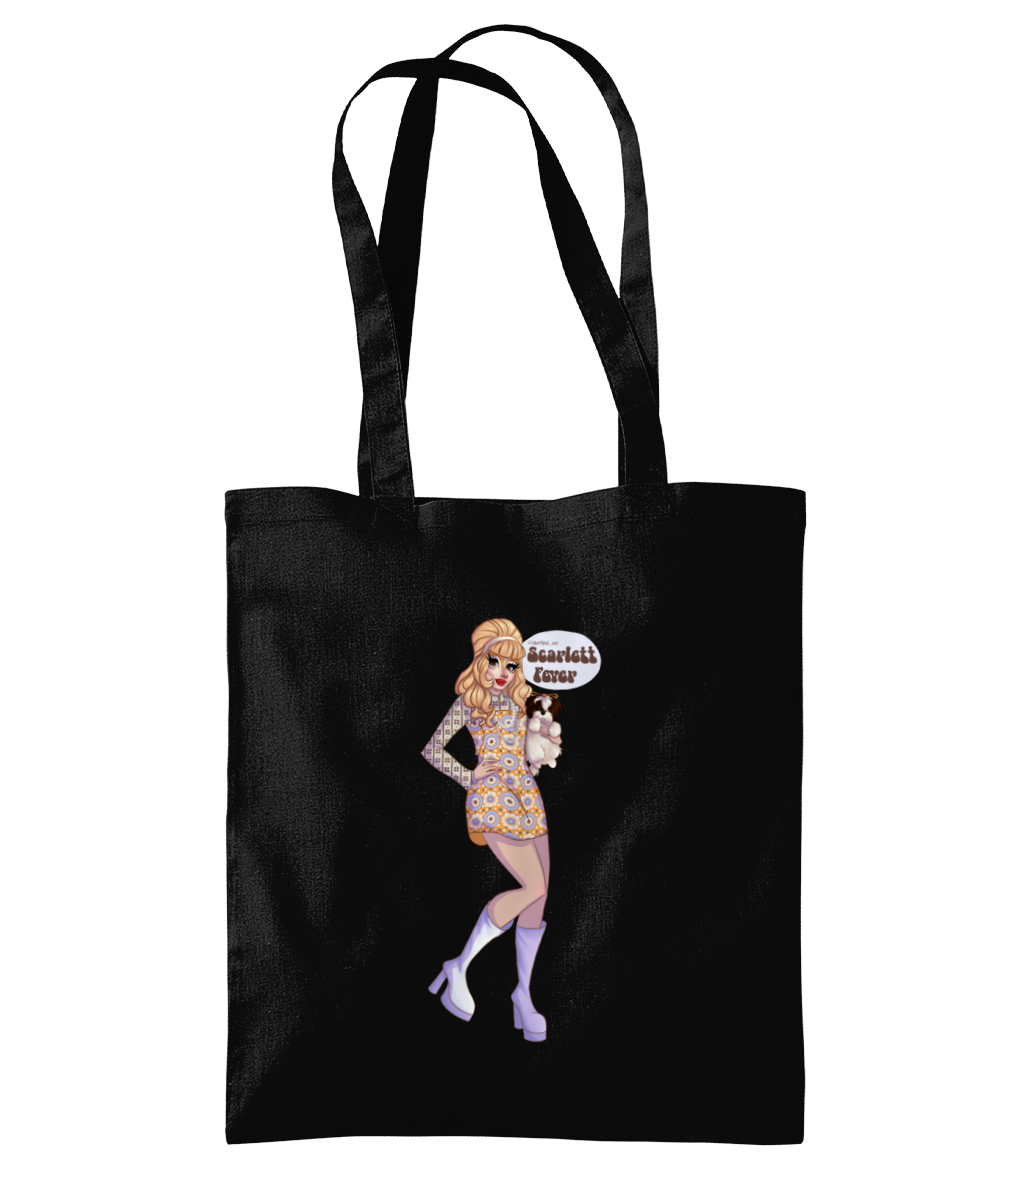 Scarlett Fever Tote Bag